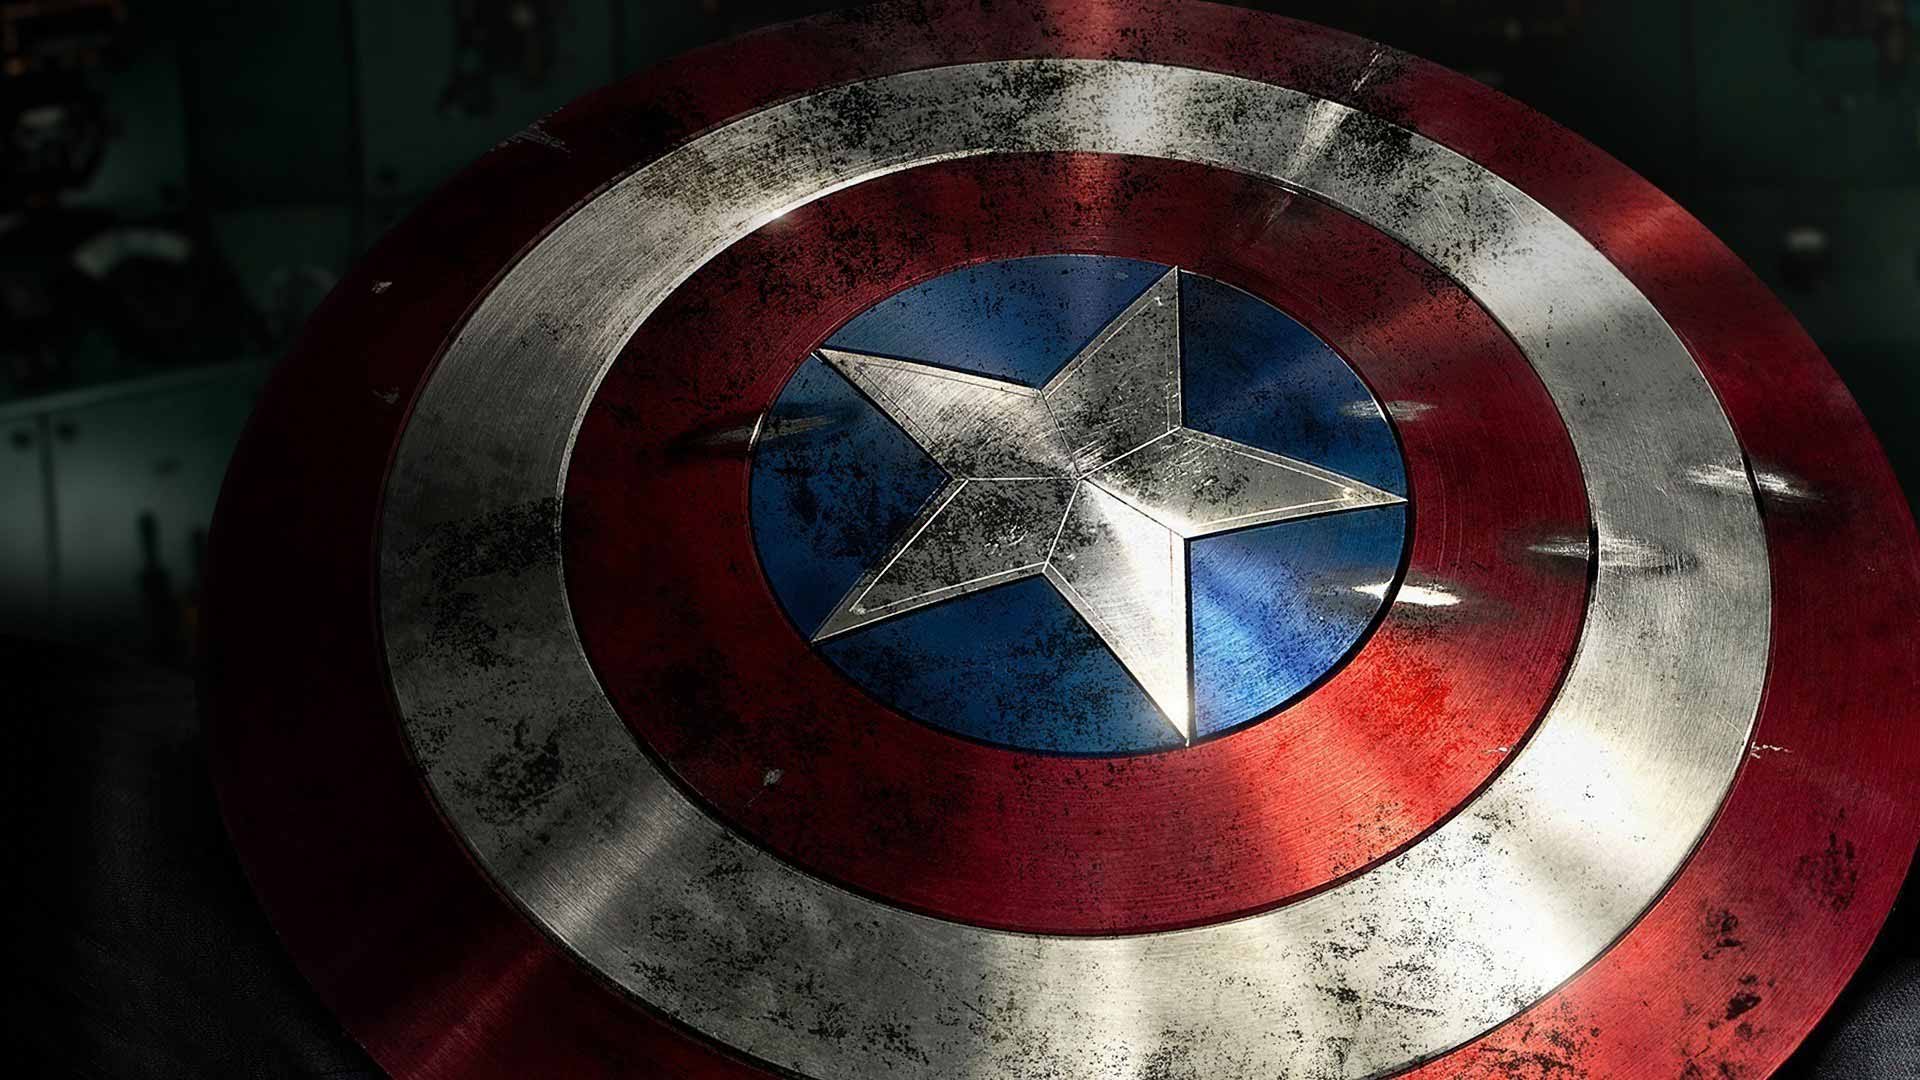 Captain America 3 to Start Filming in Atlanta Next April Krypton